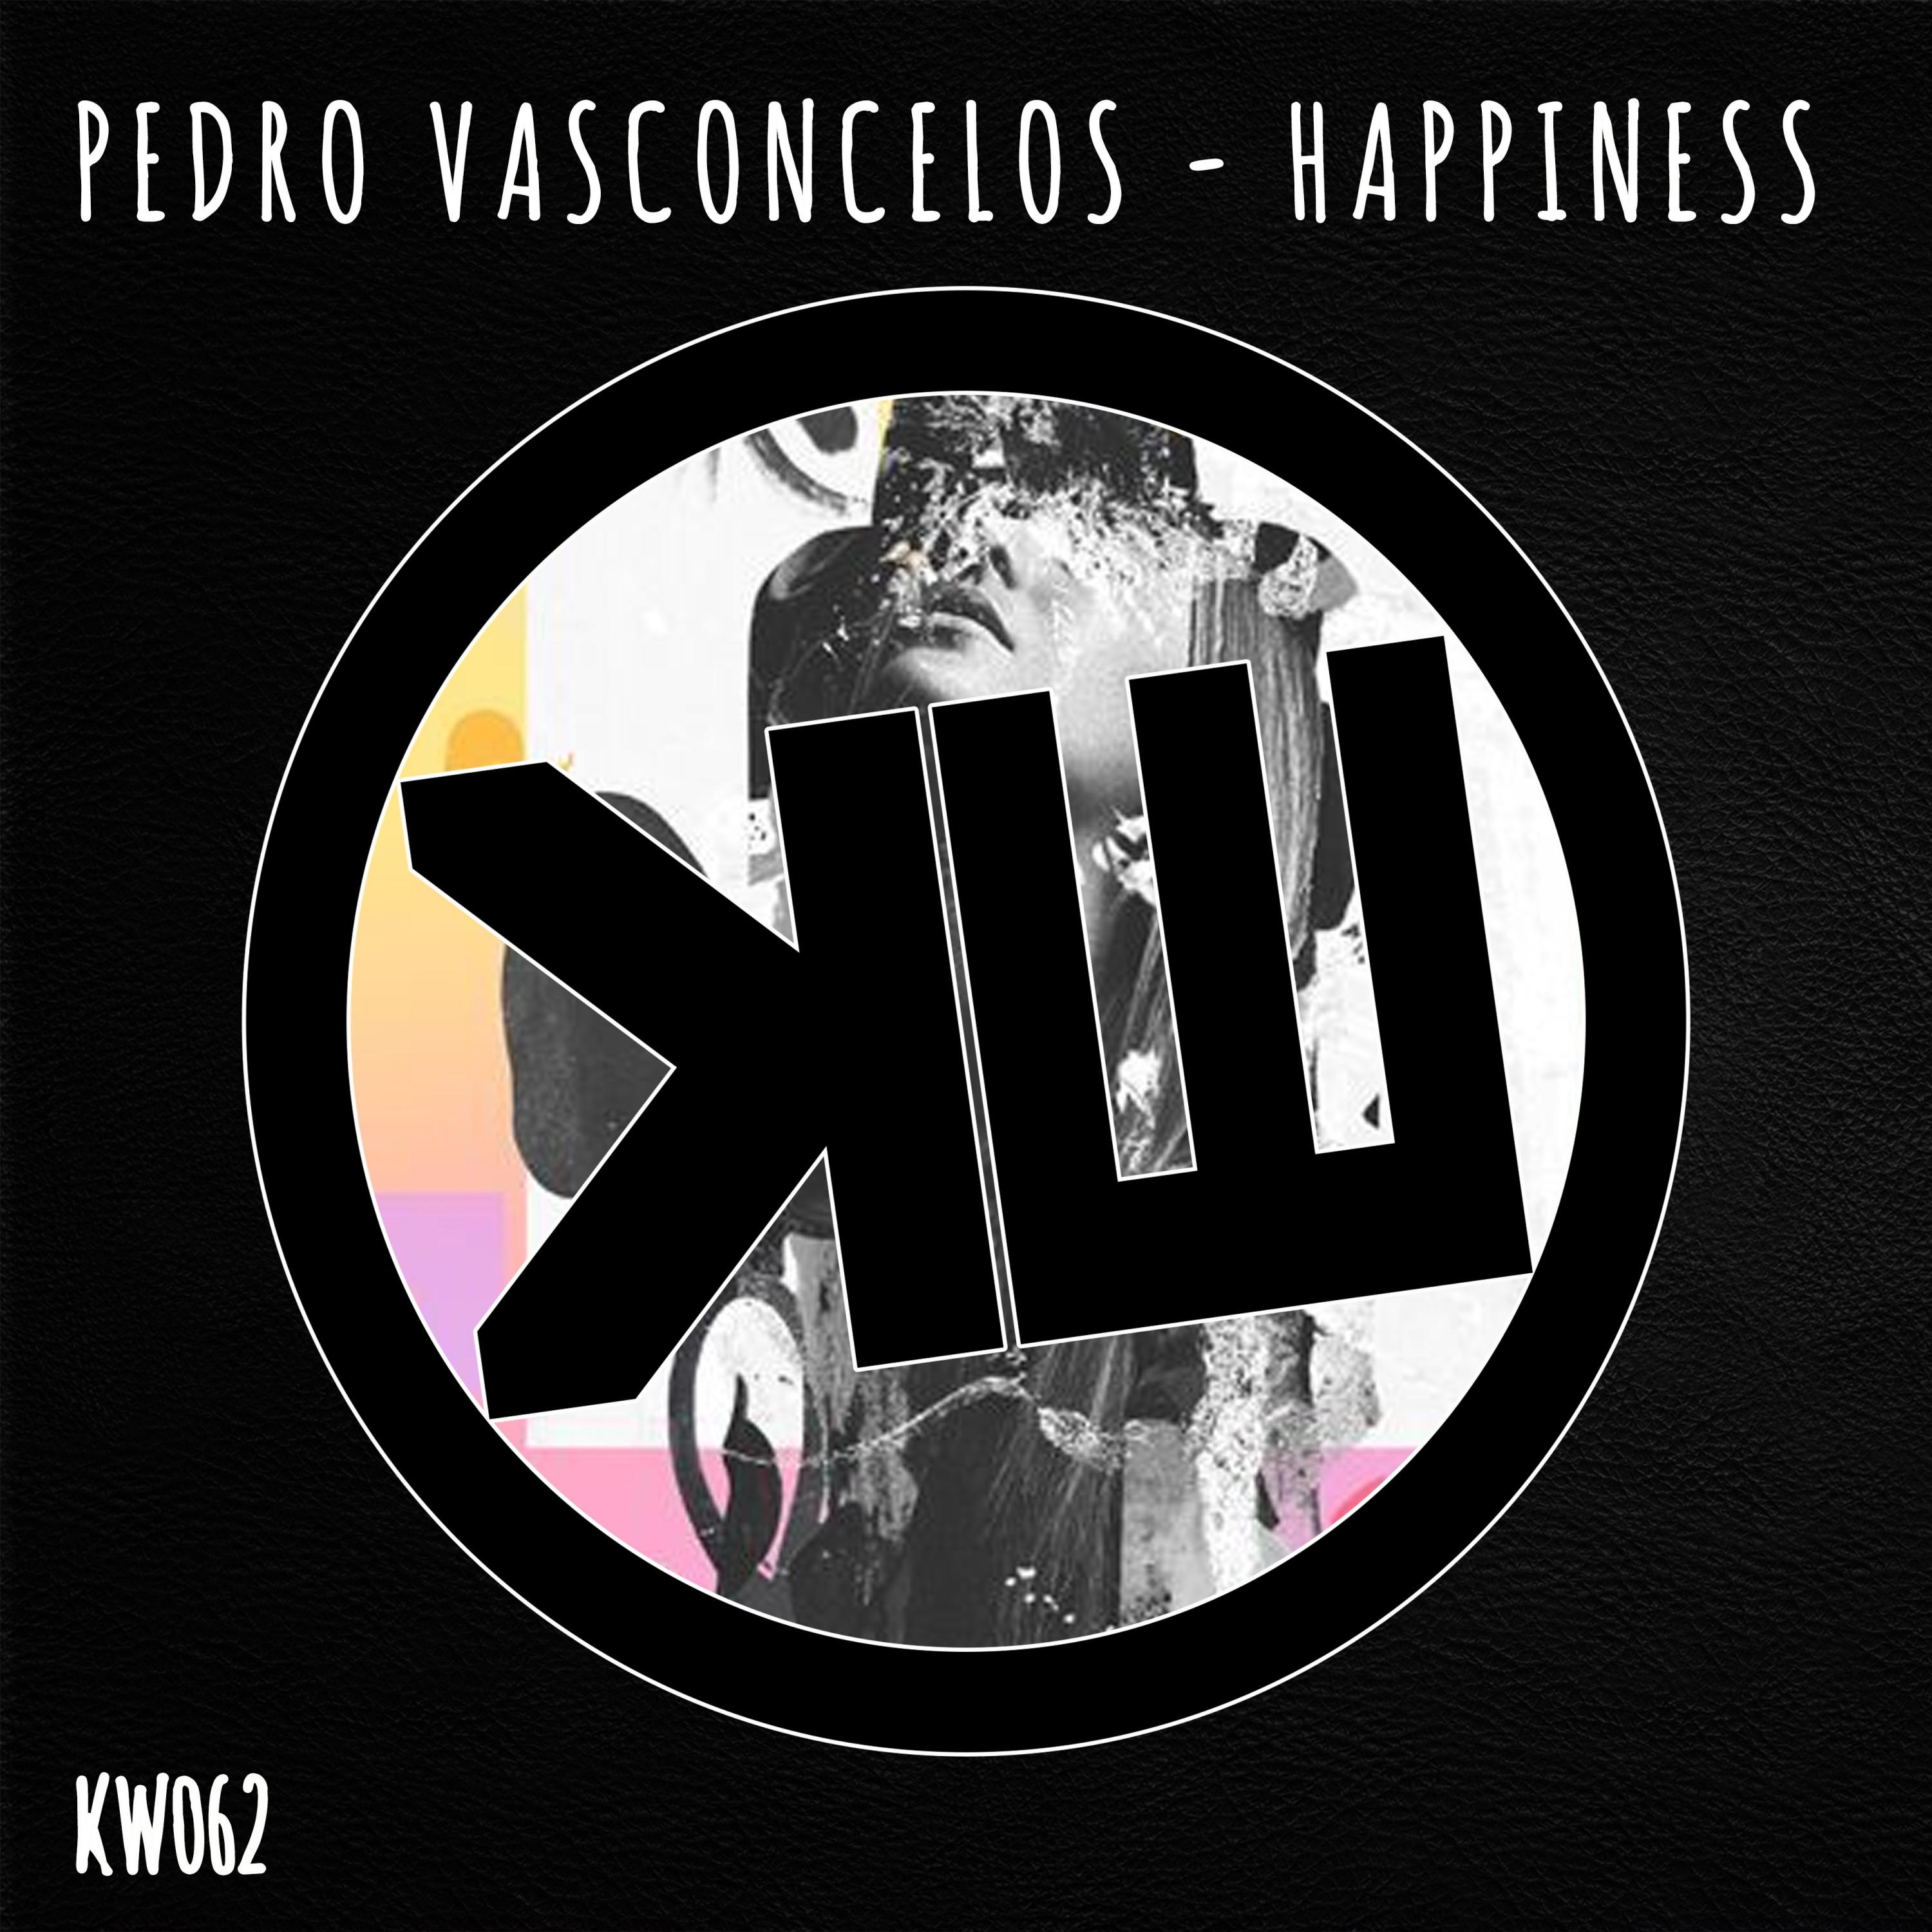 Pedro Vasconcelos - Happiness